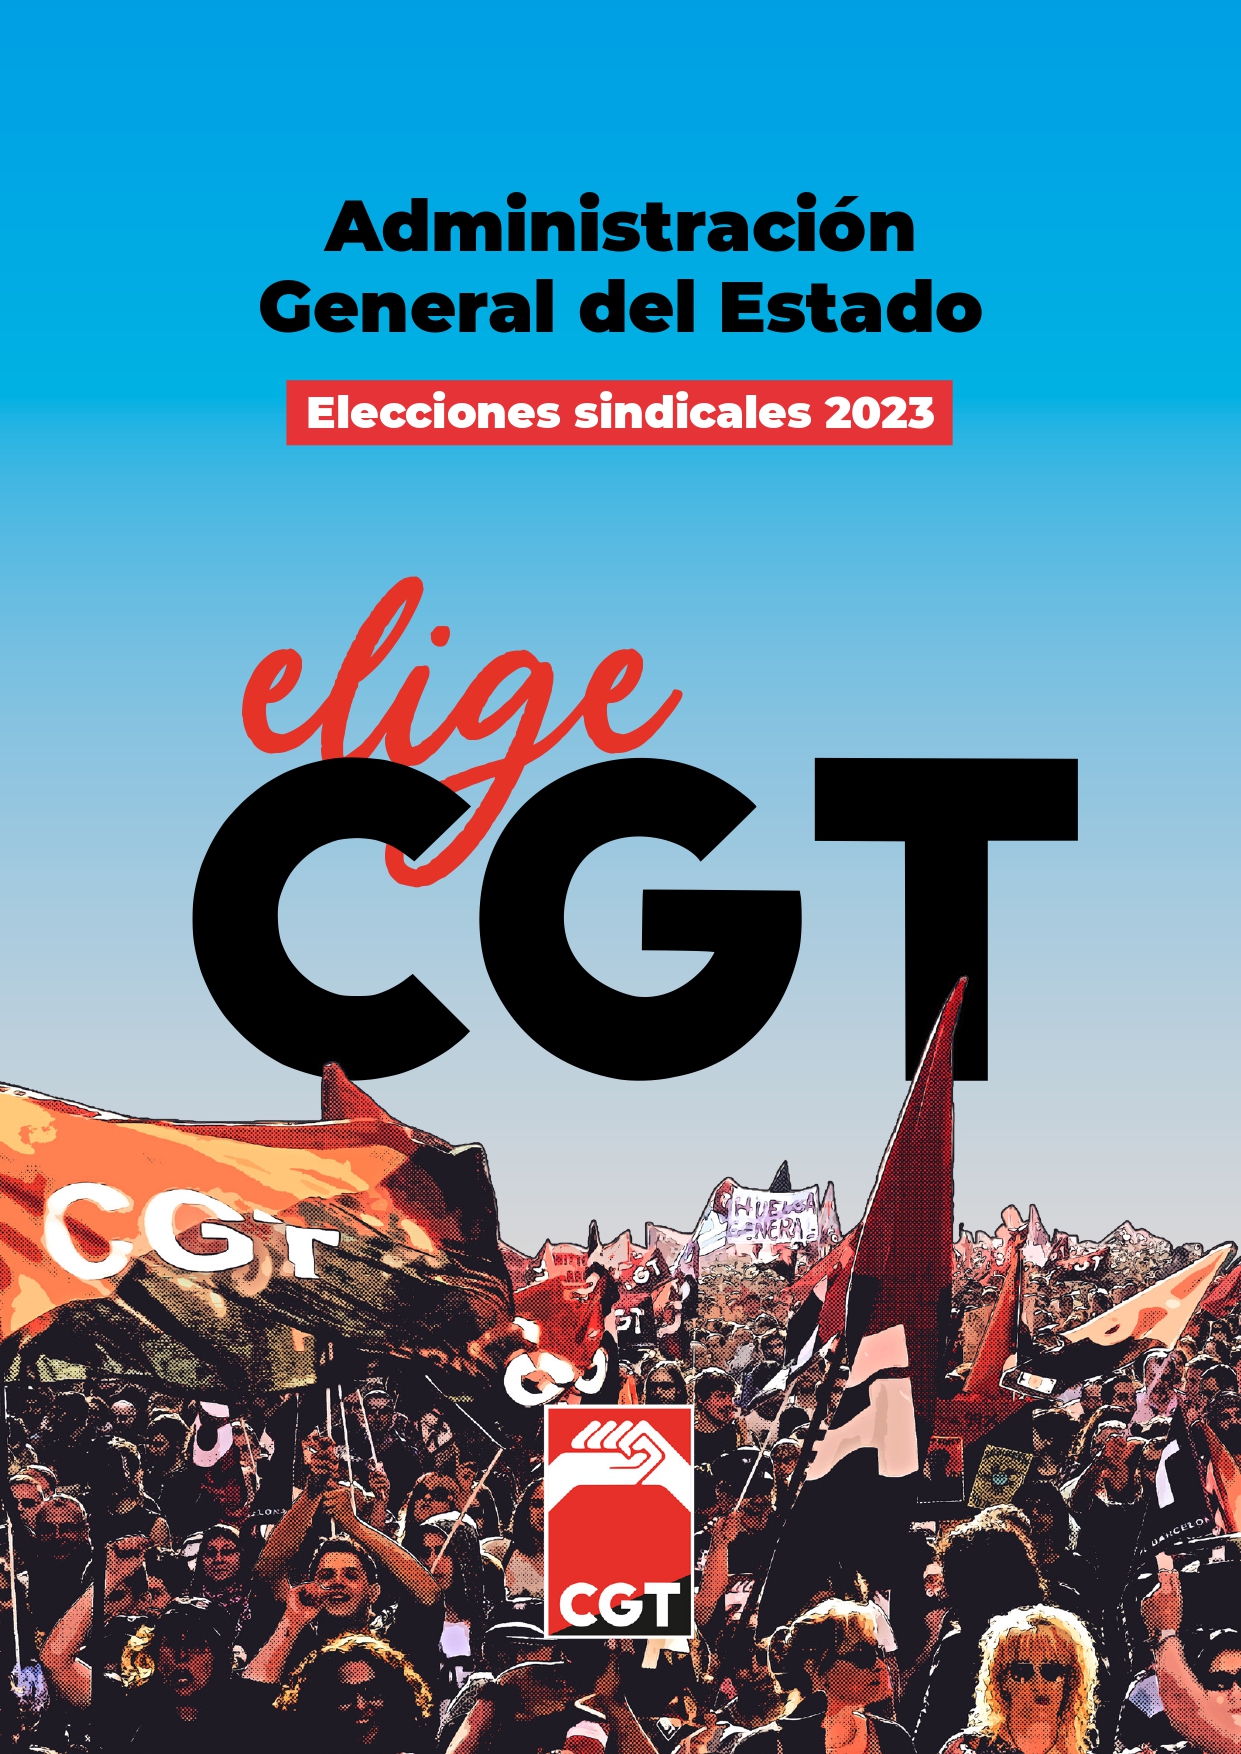 Noticia destacadaCGT confía en consolidar su tendencia al alza en las elecciones sindicales en la AGE